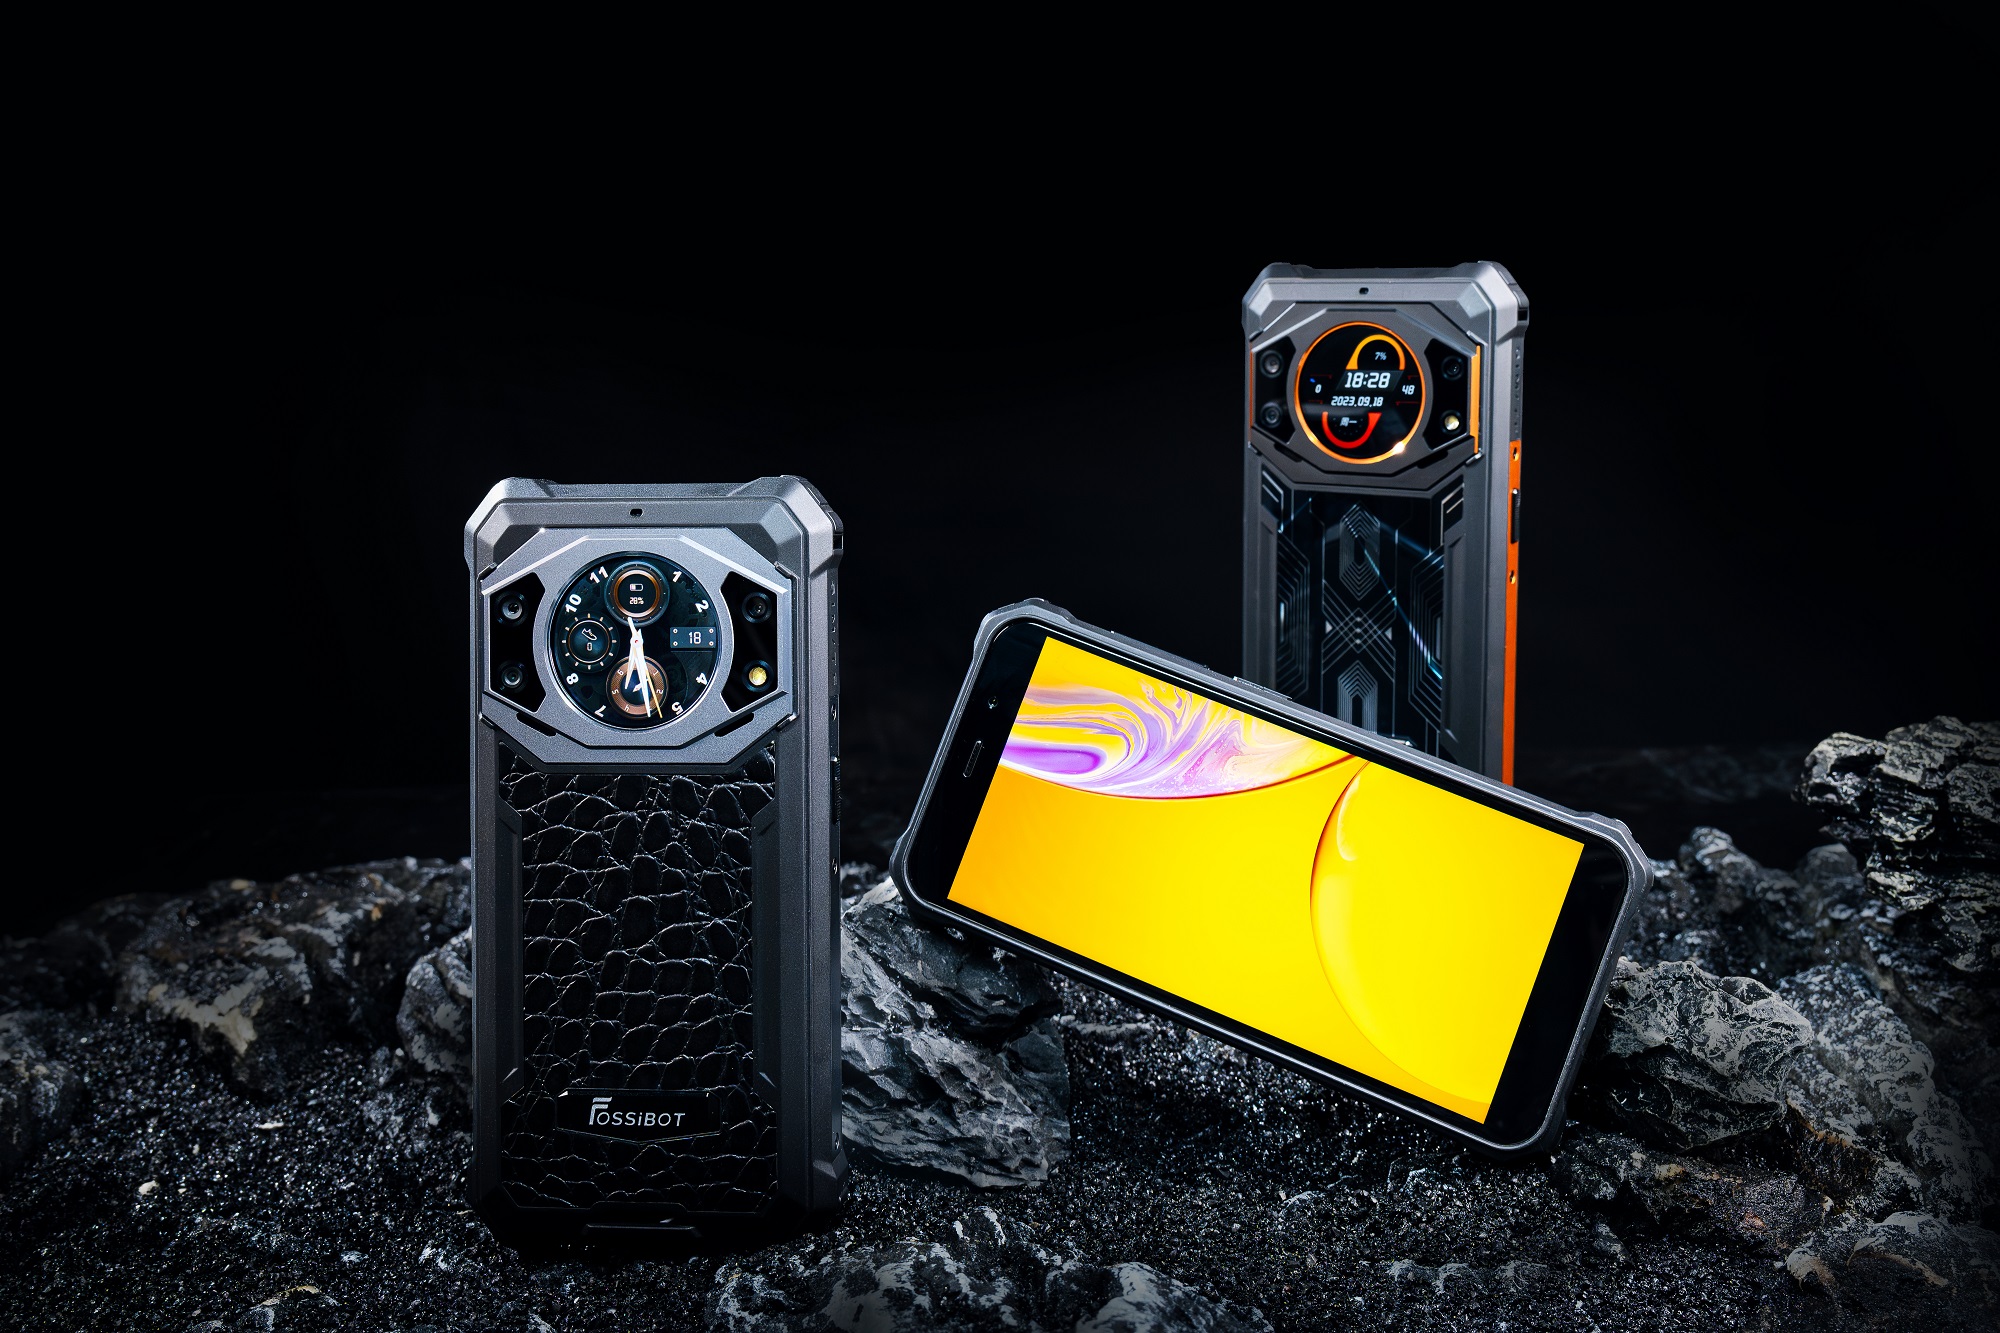 Promoções 11.11: FOSSiBOT F101 Pro: celular com tela dupla e bateria de 10600mAh por R$ 690 3